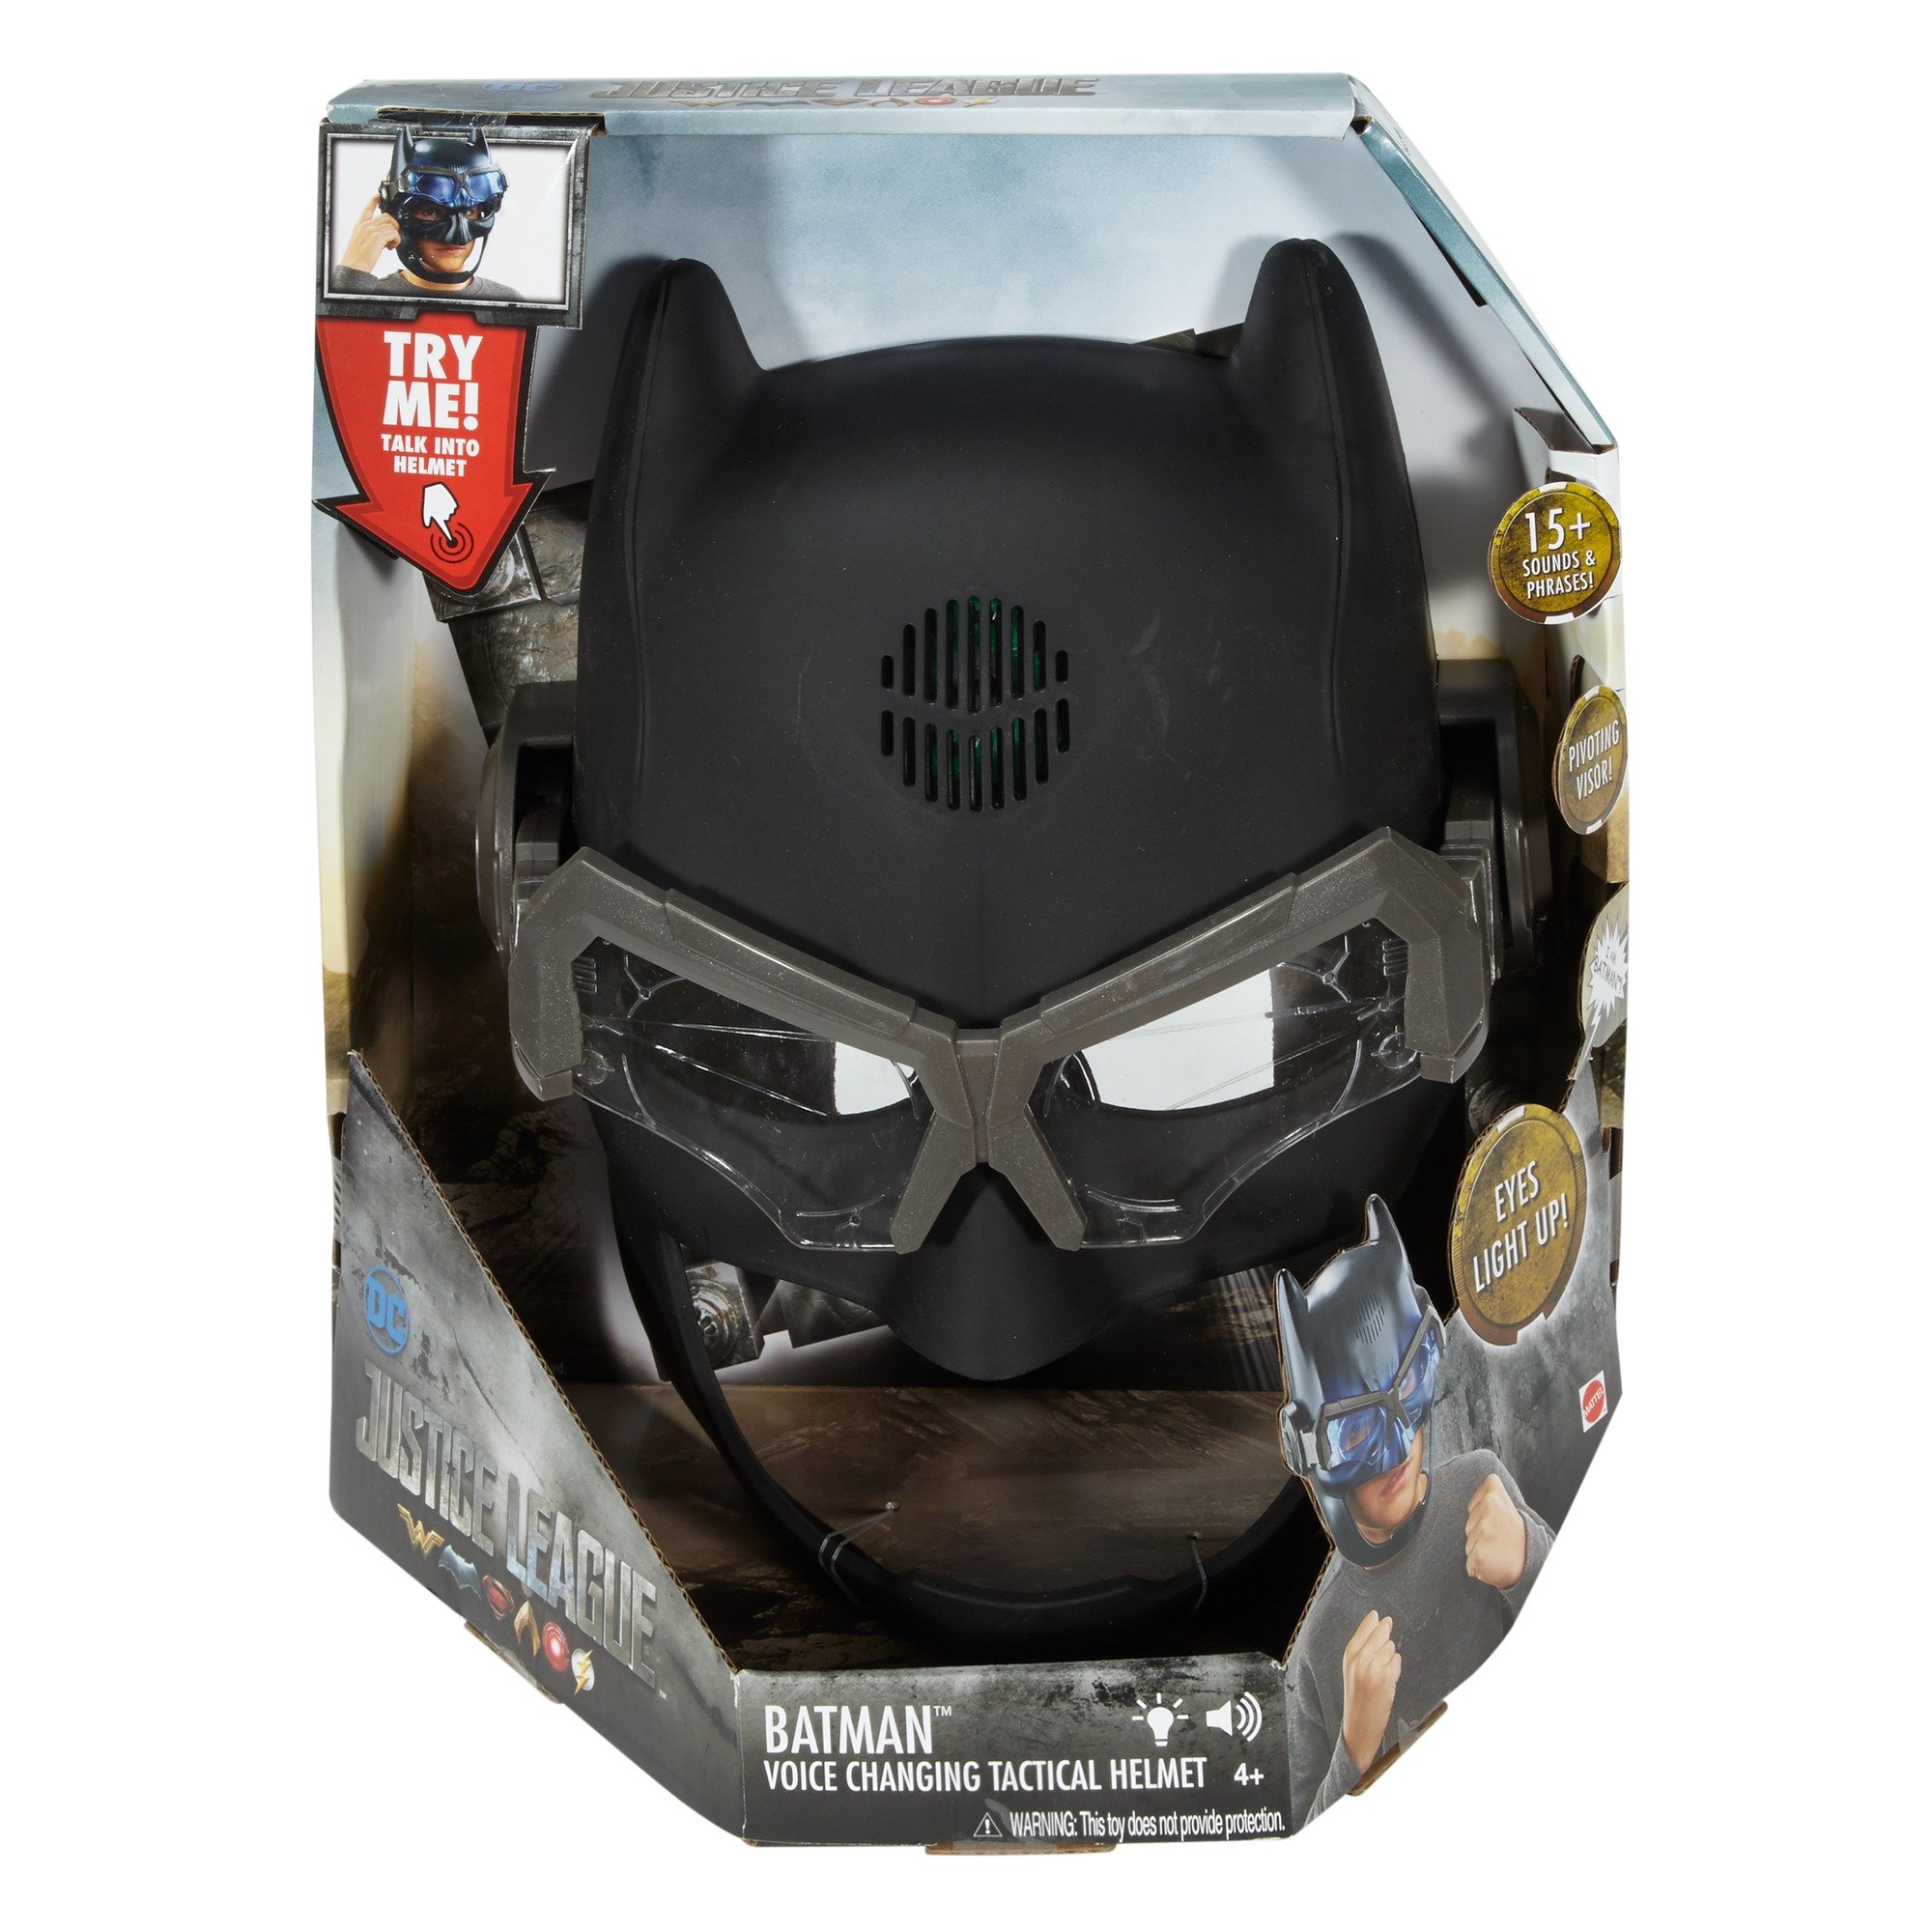 JUSTICE LEAGUE BATMAN Voice Changing Tactical Helmet